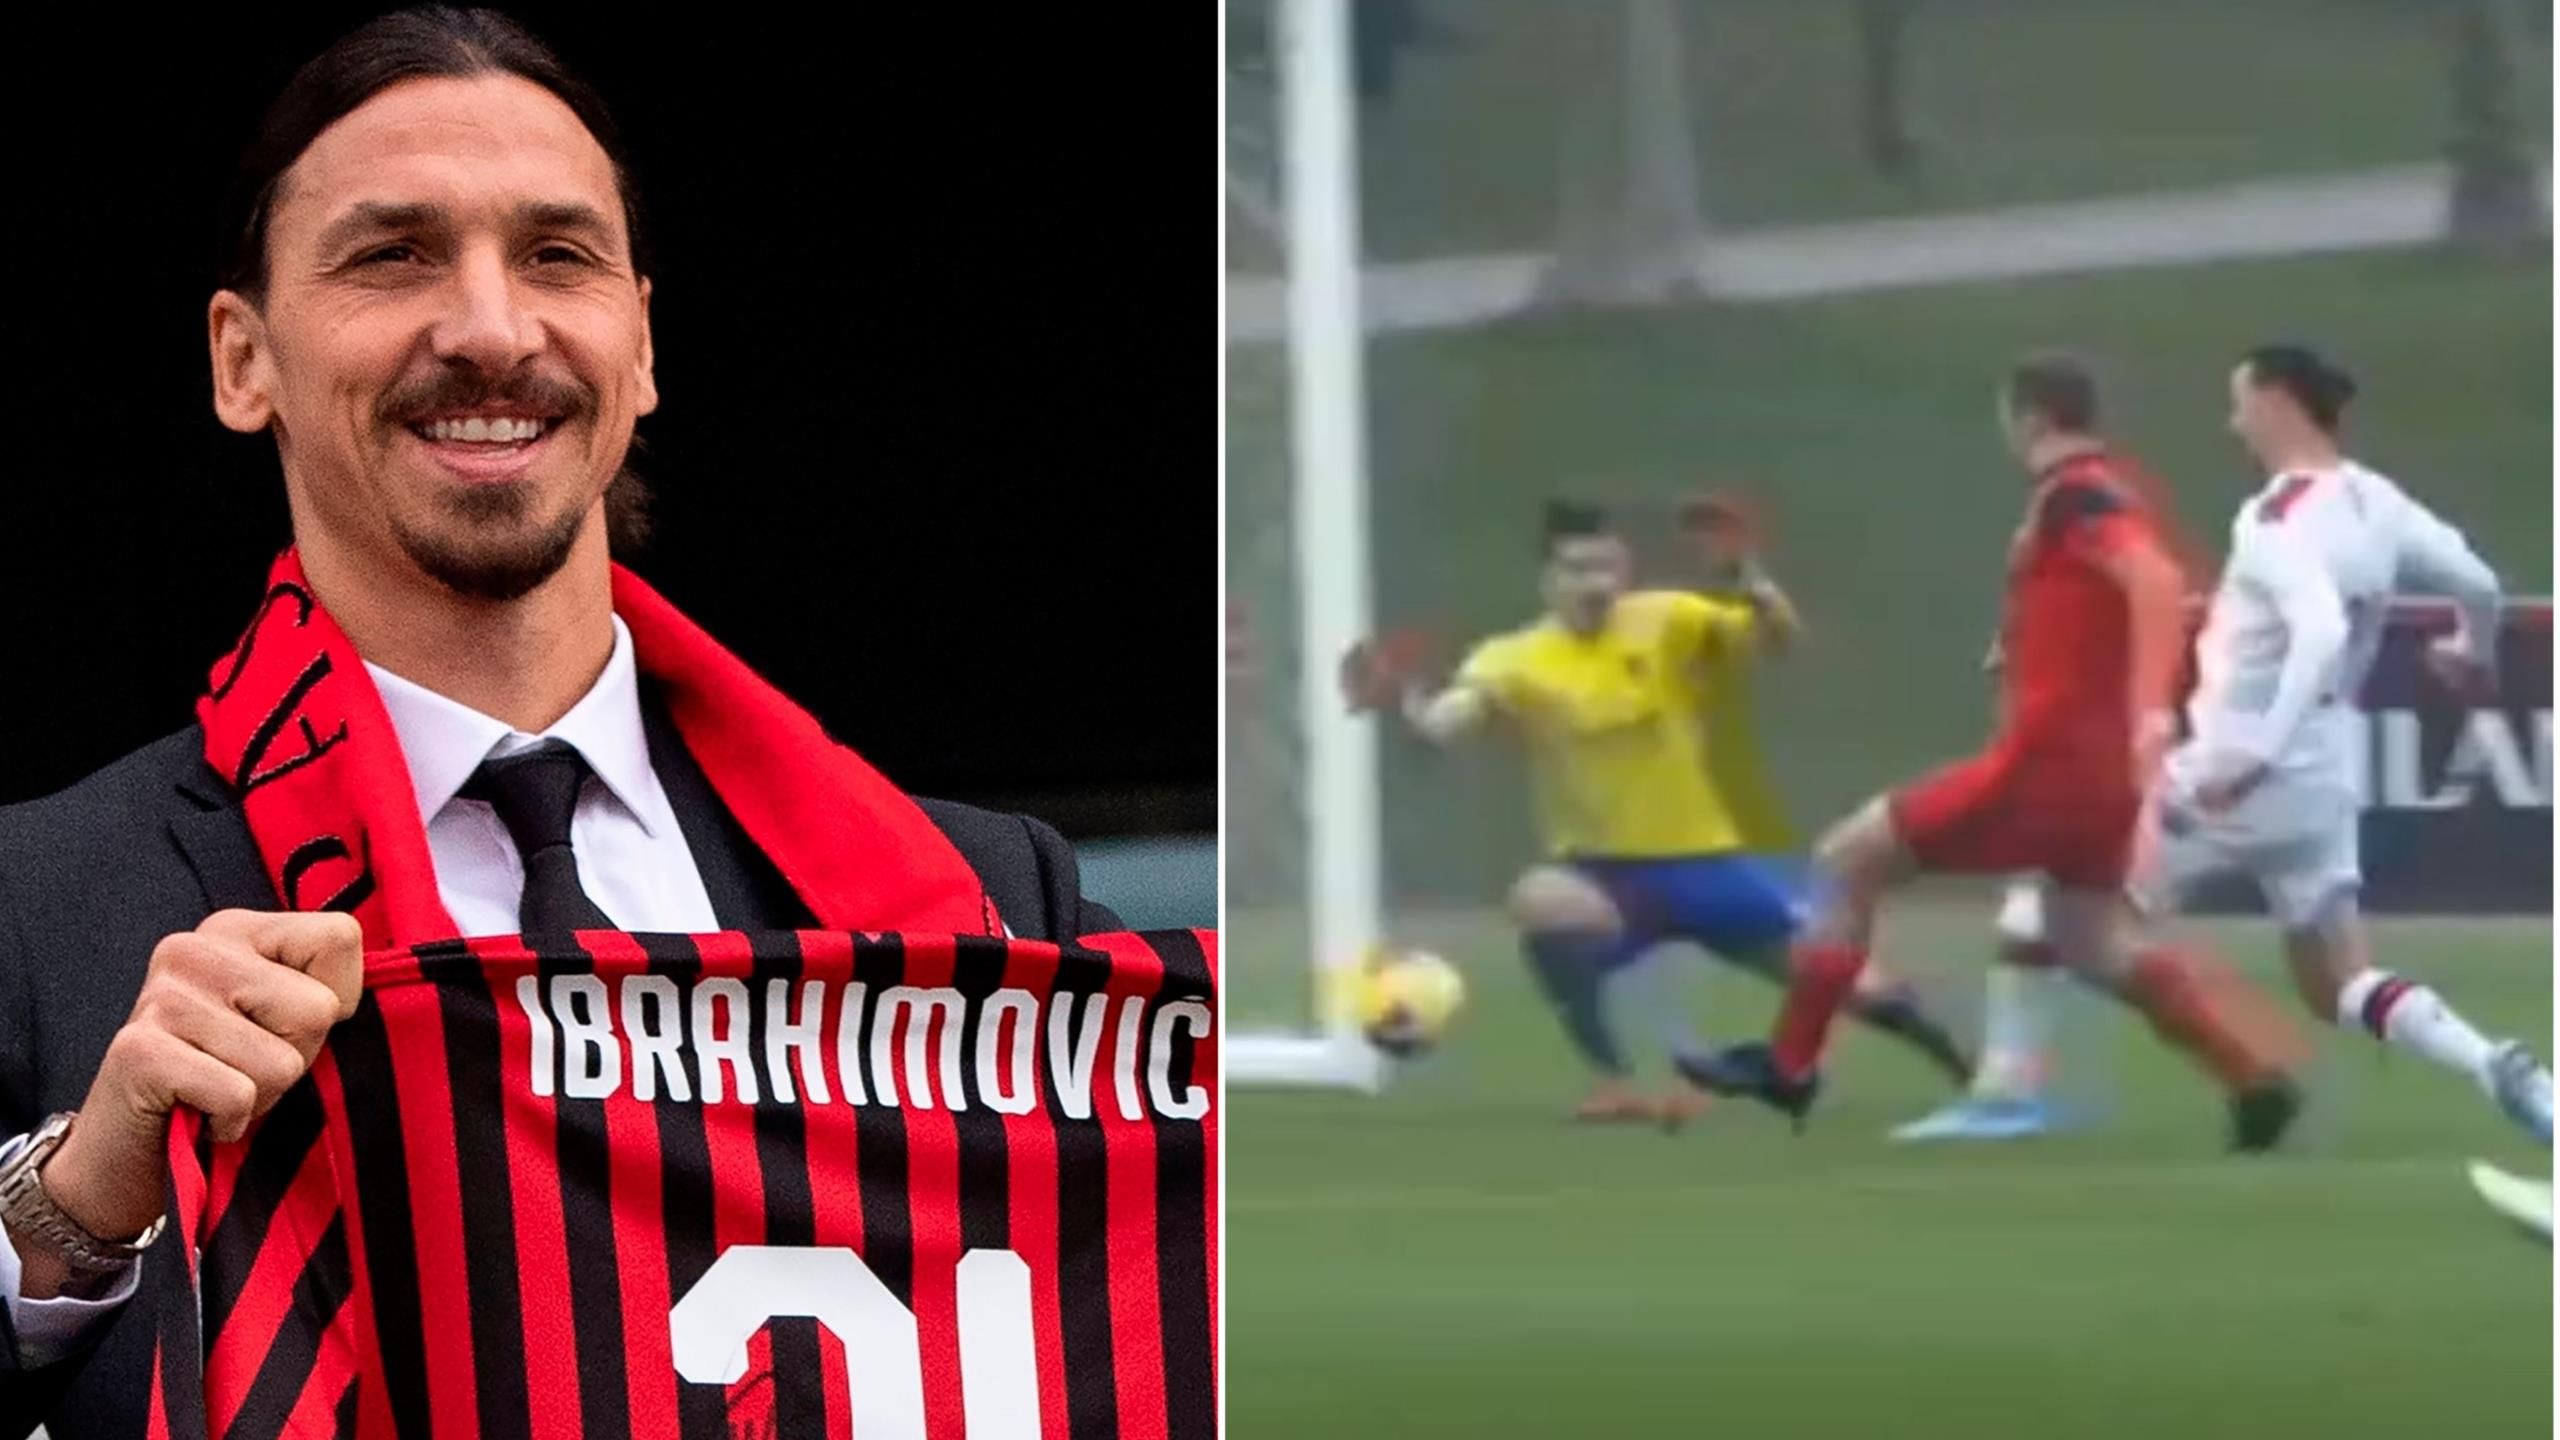 Tronditet Milani/ Ibrahimovic dëmtohet në stërvtje dhe rrezikon të mbyllë karrierën